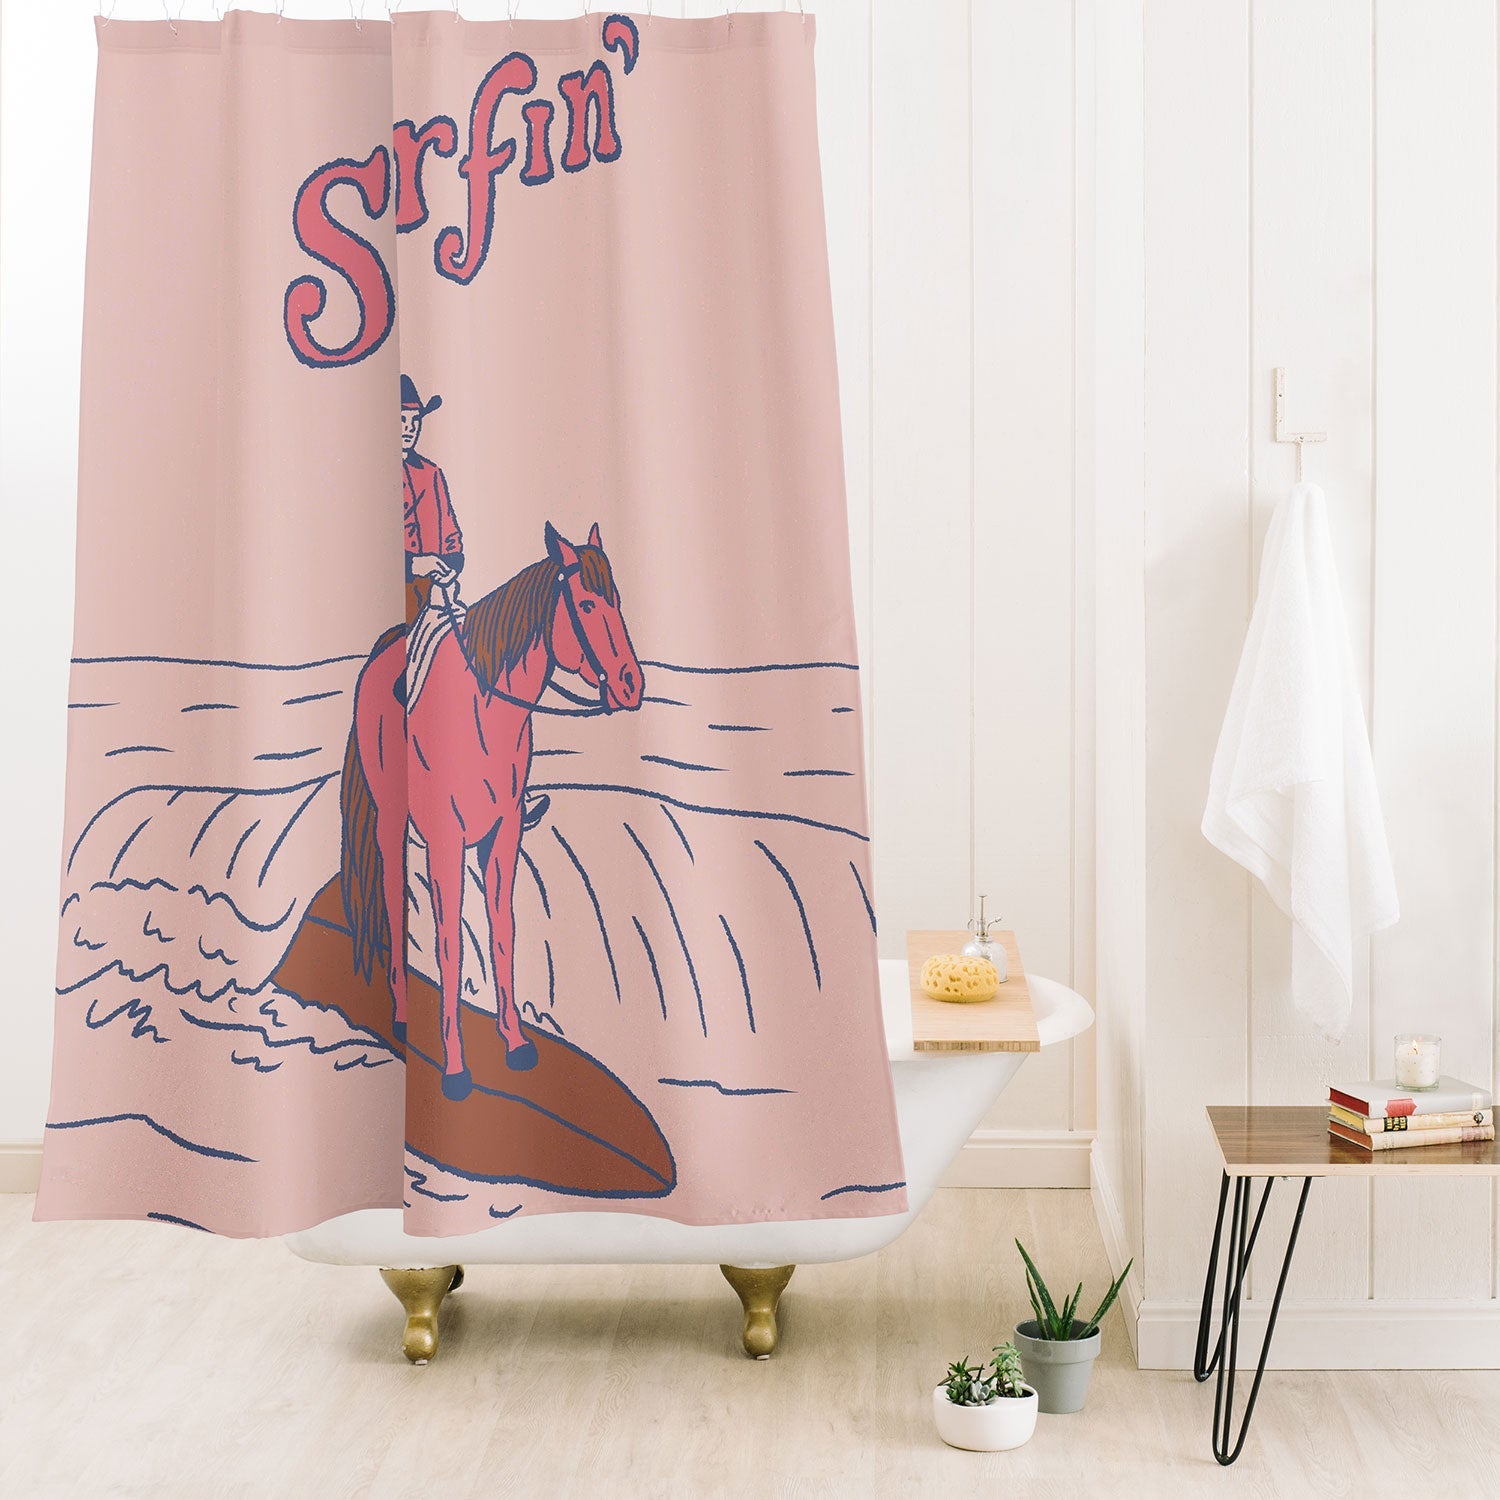 Surfin Shower Curtain (DS)